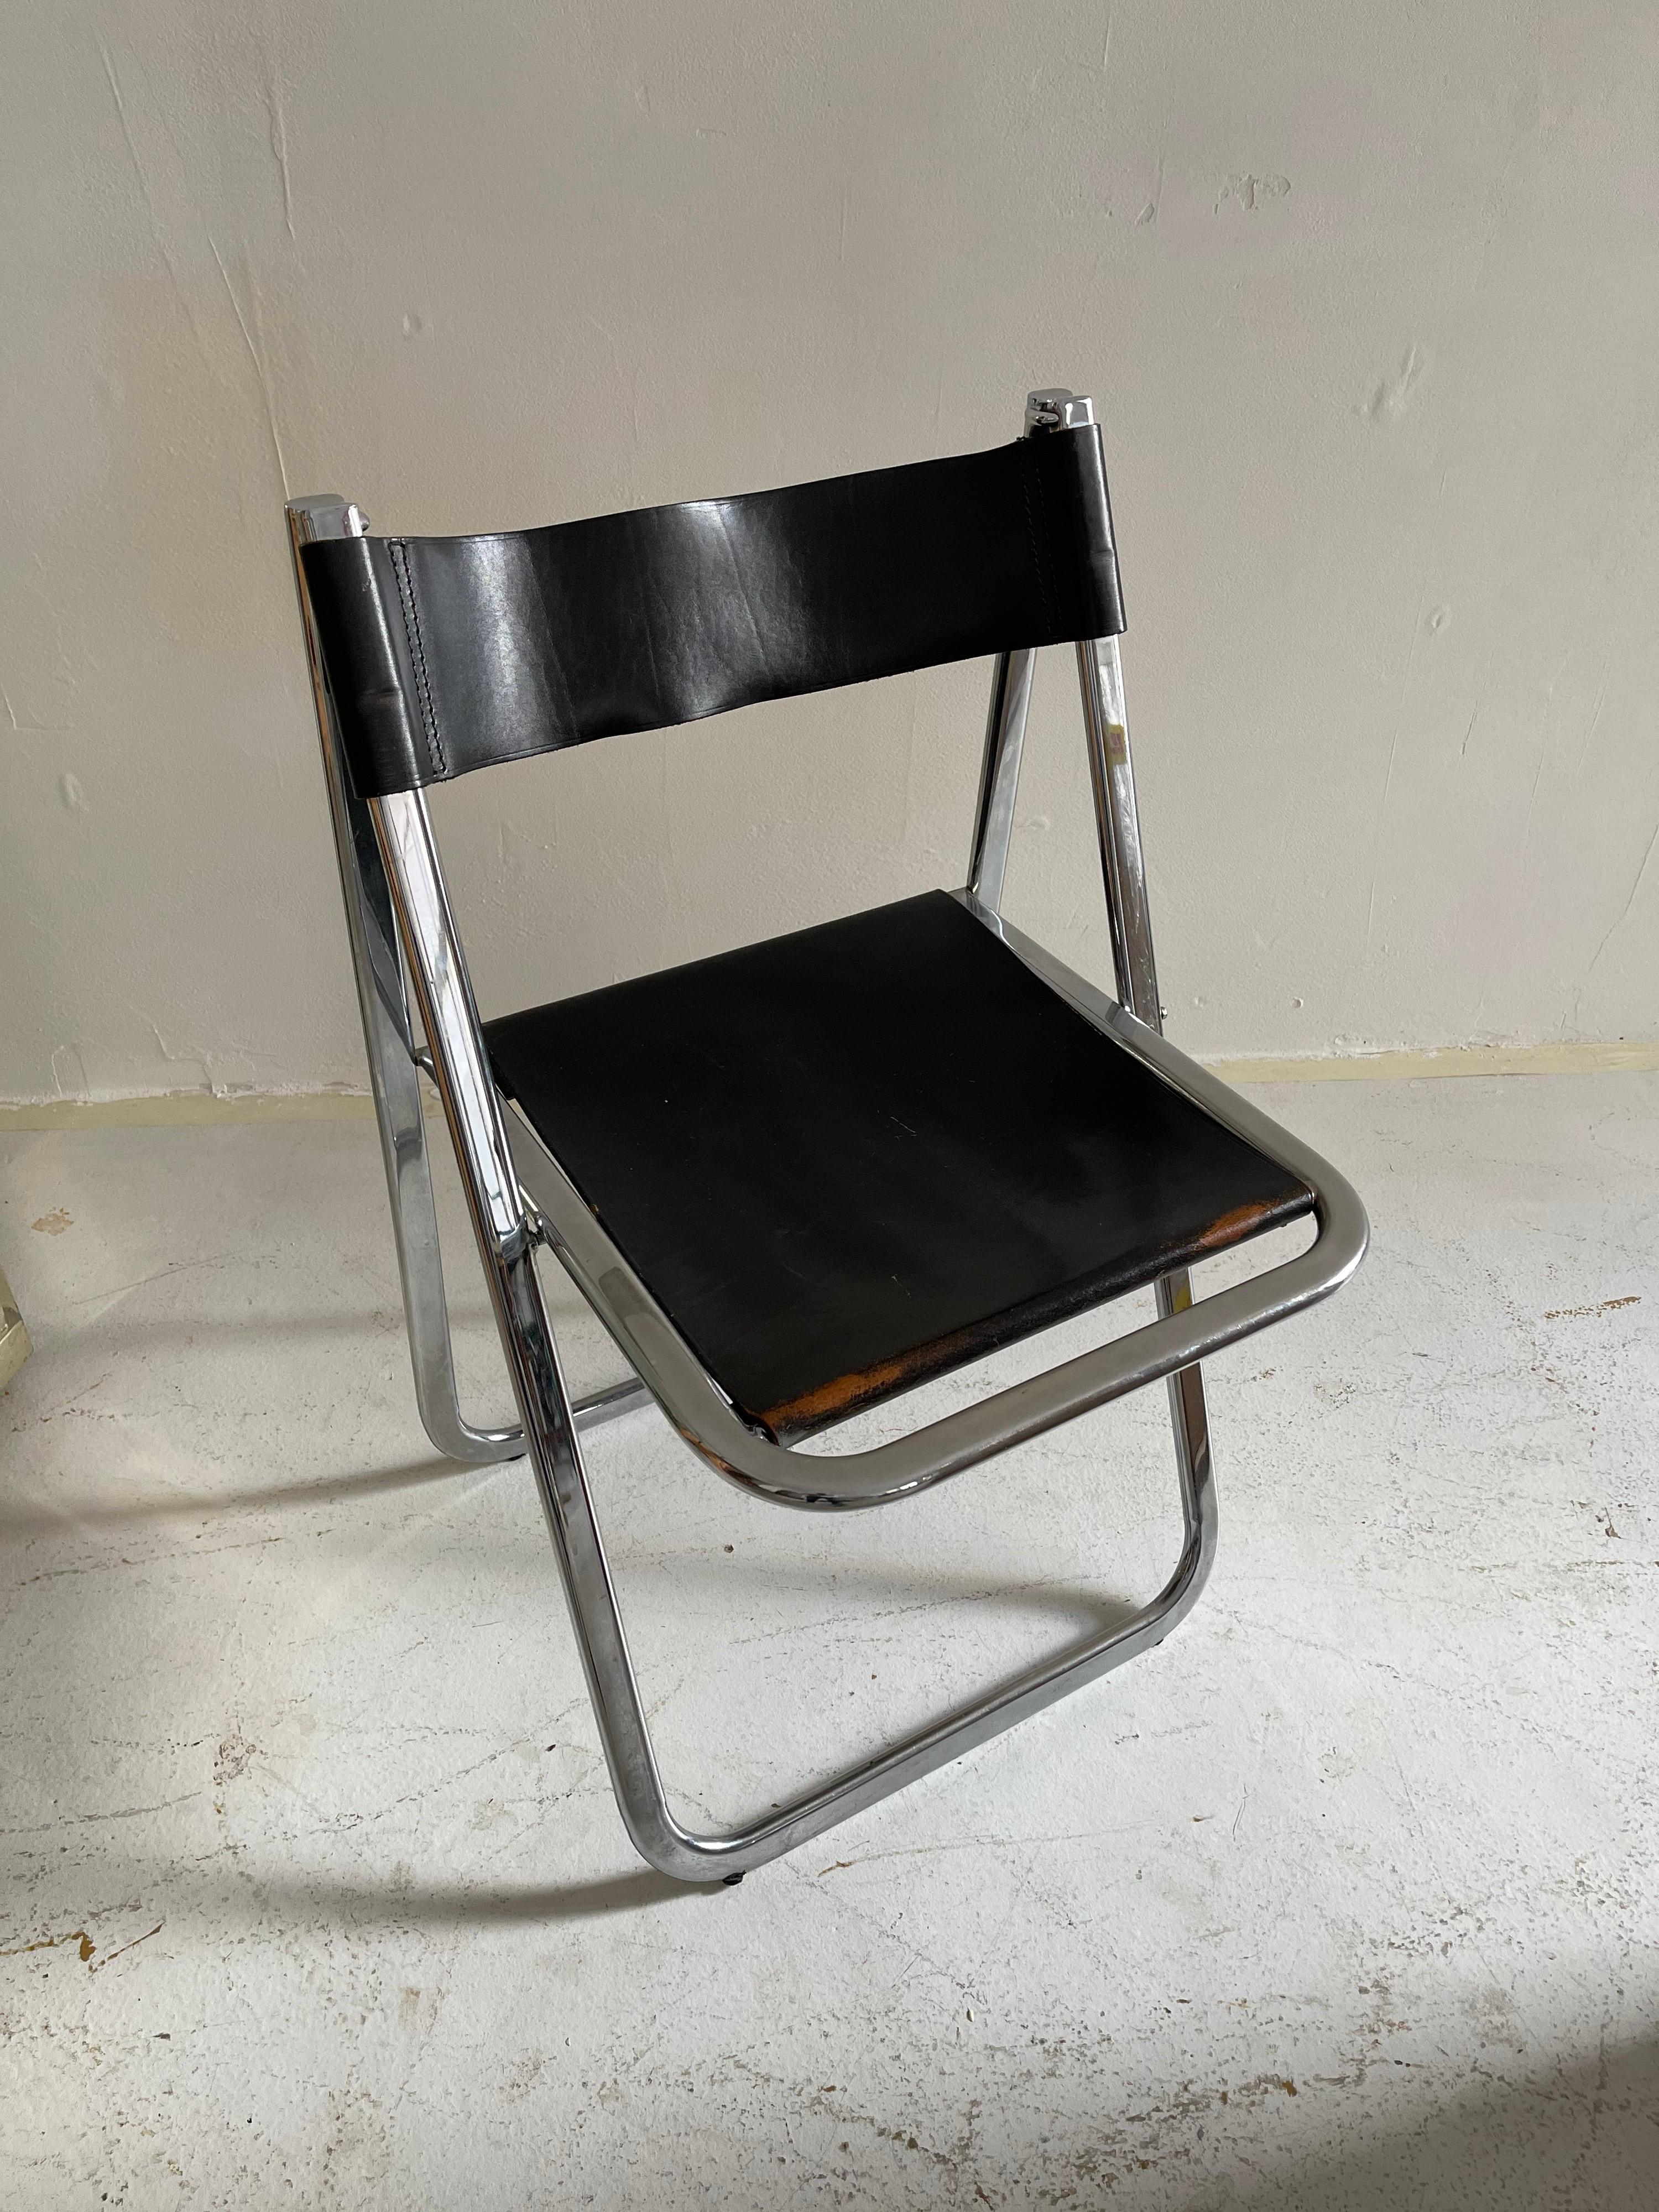 Italian folding chrome chair, Italy, 1970s.